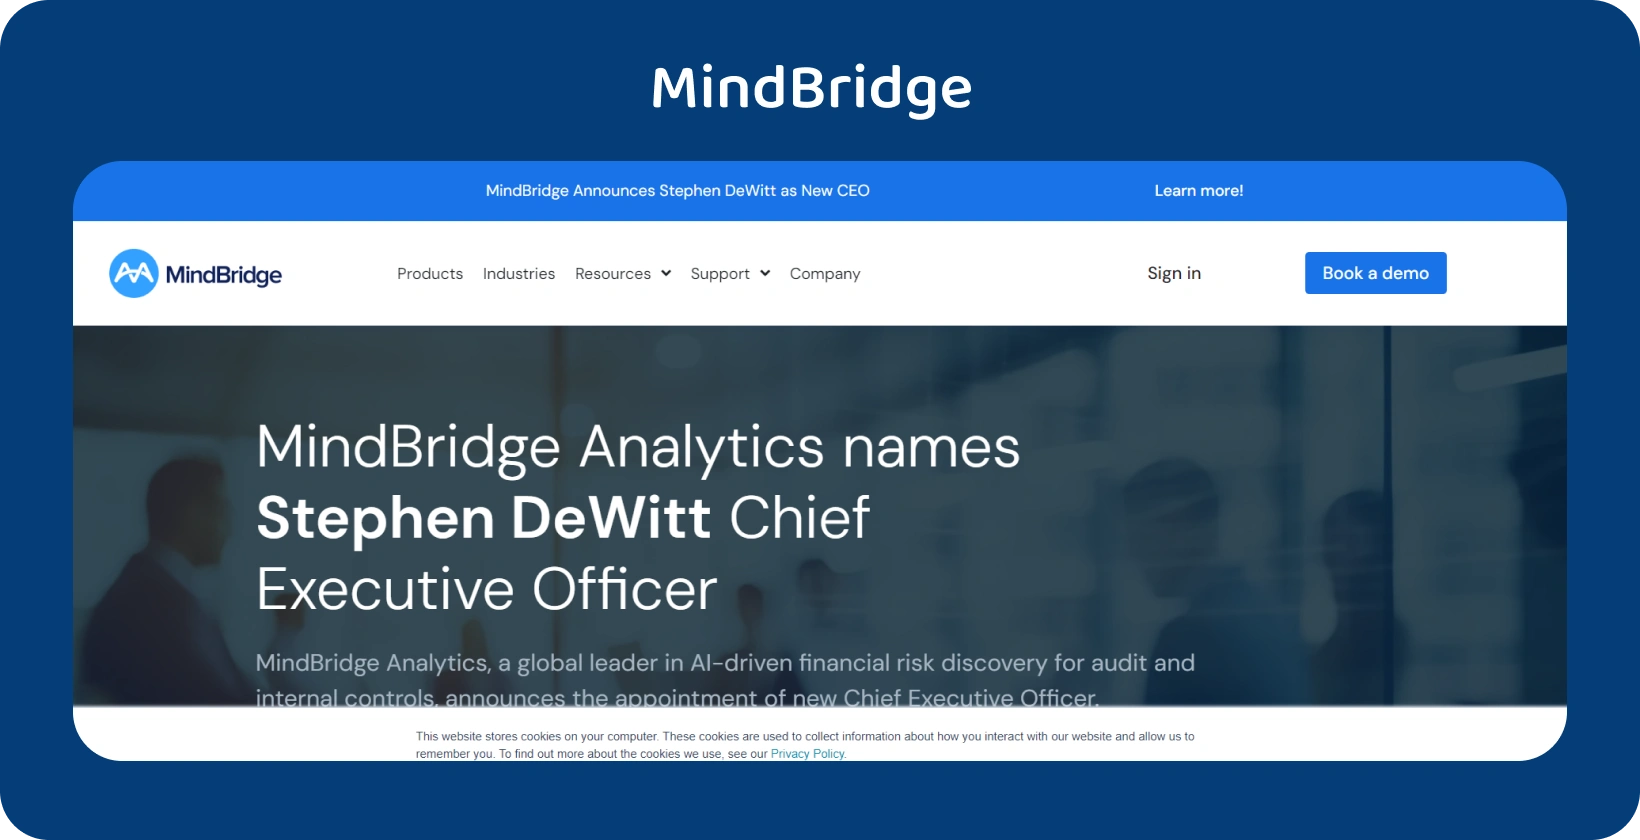 MindBridge Analytics होमपेज गर्व से स्टीफन डेविट को अपने नए सीईओ के रूप में घोषित करता है, जो कंपनी की आगे की यात्रा का नेतृत्व करता है।